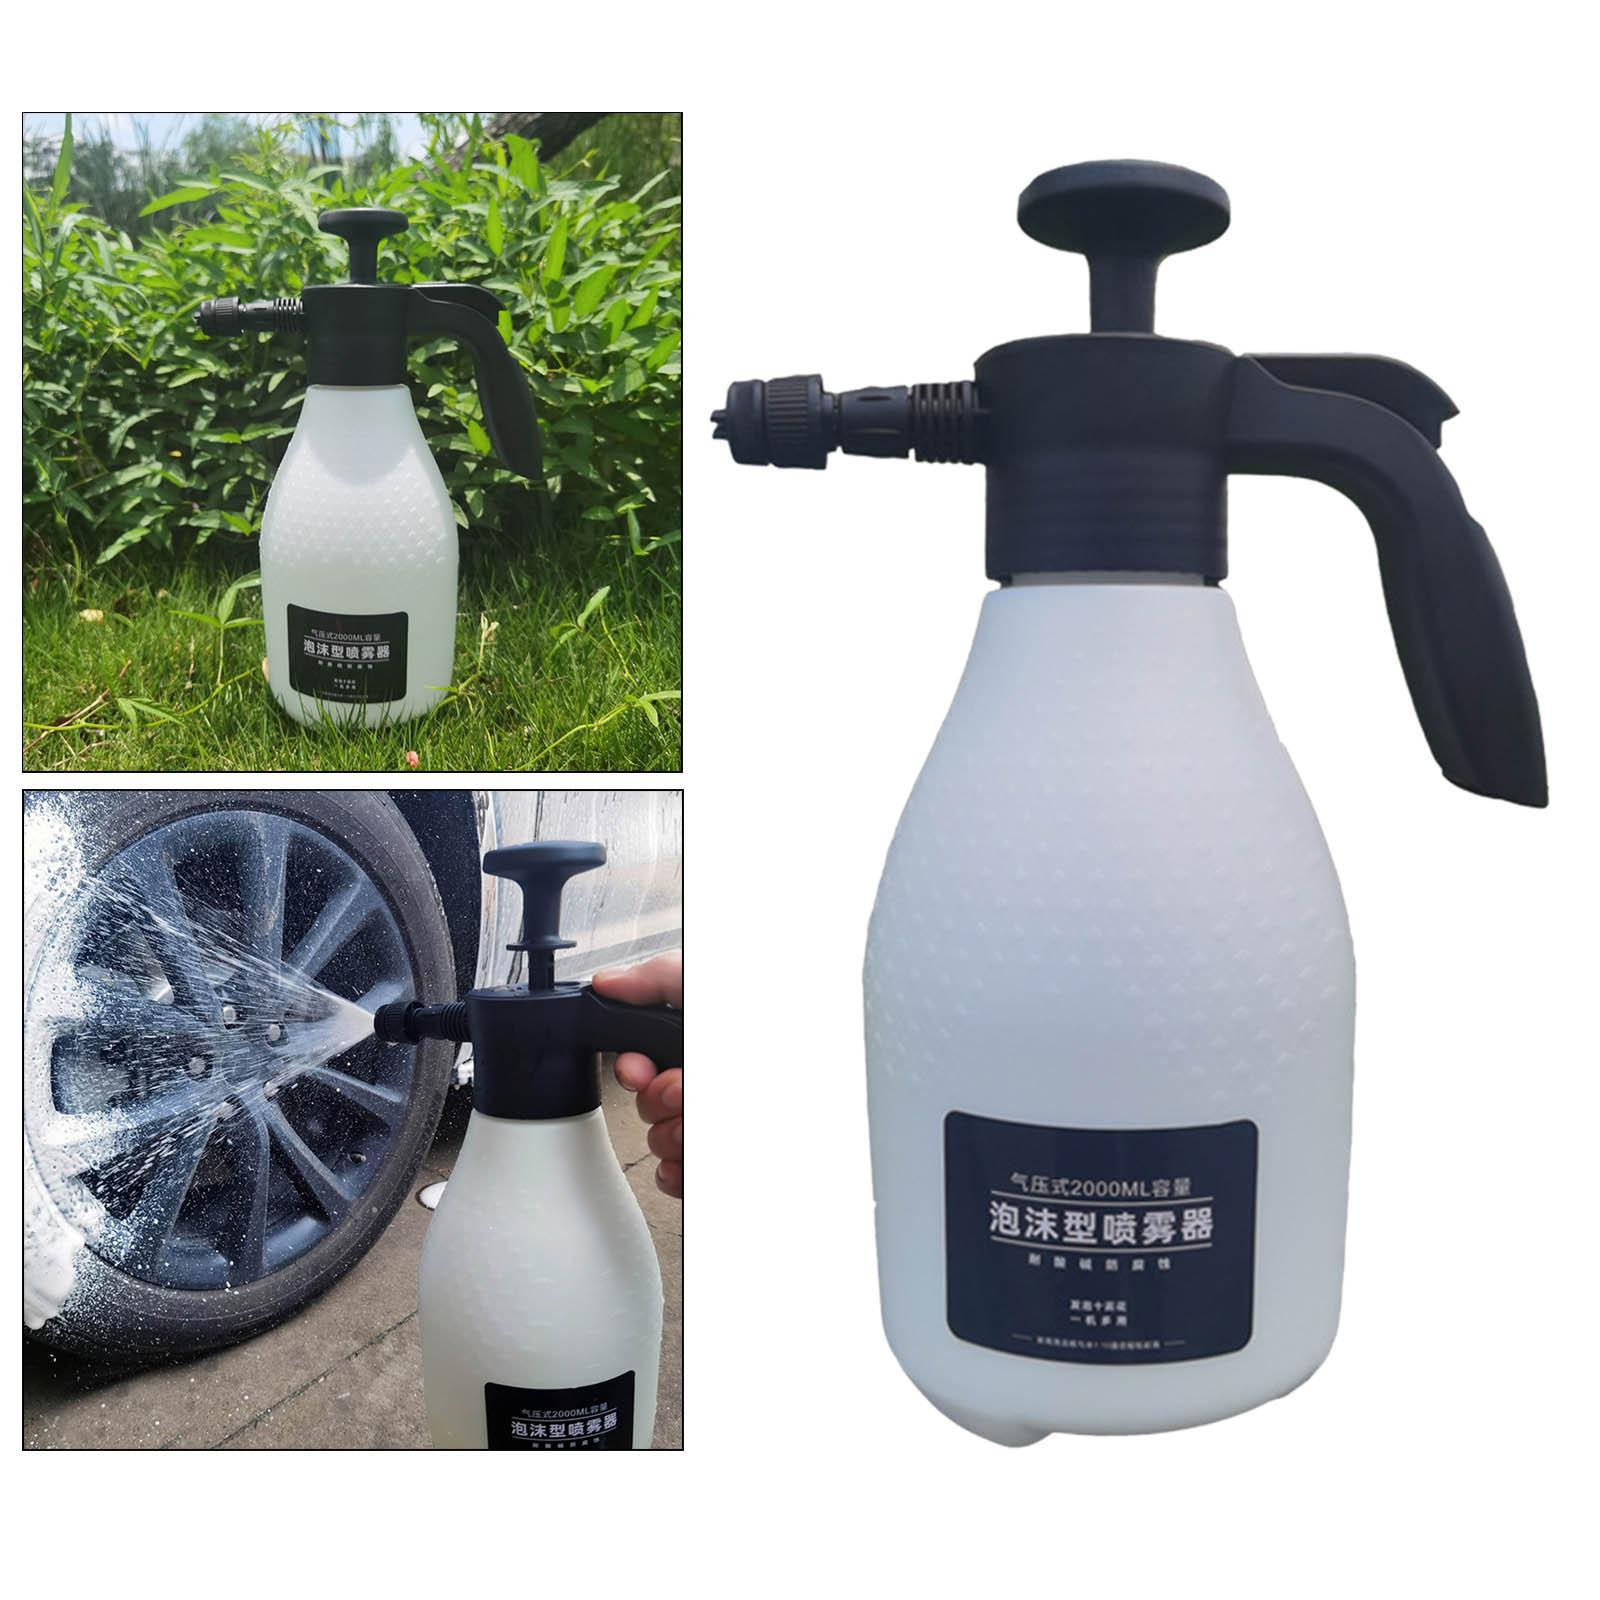 Car Wash Sprayer Foam Lance Washer Pump Sprayer Fit for Household Garden